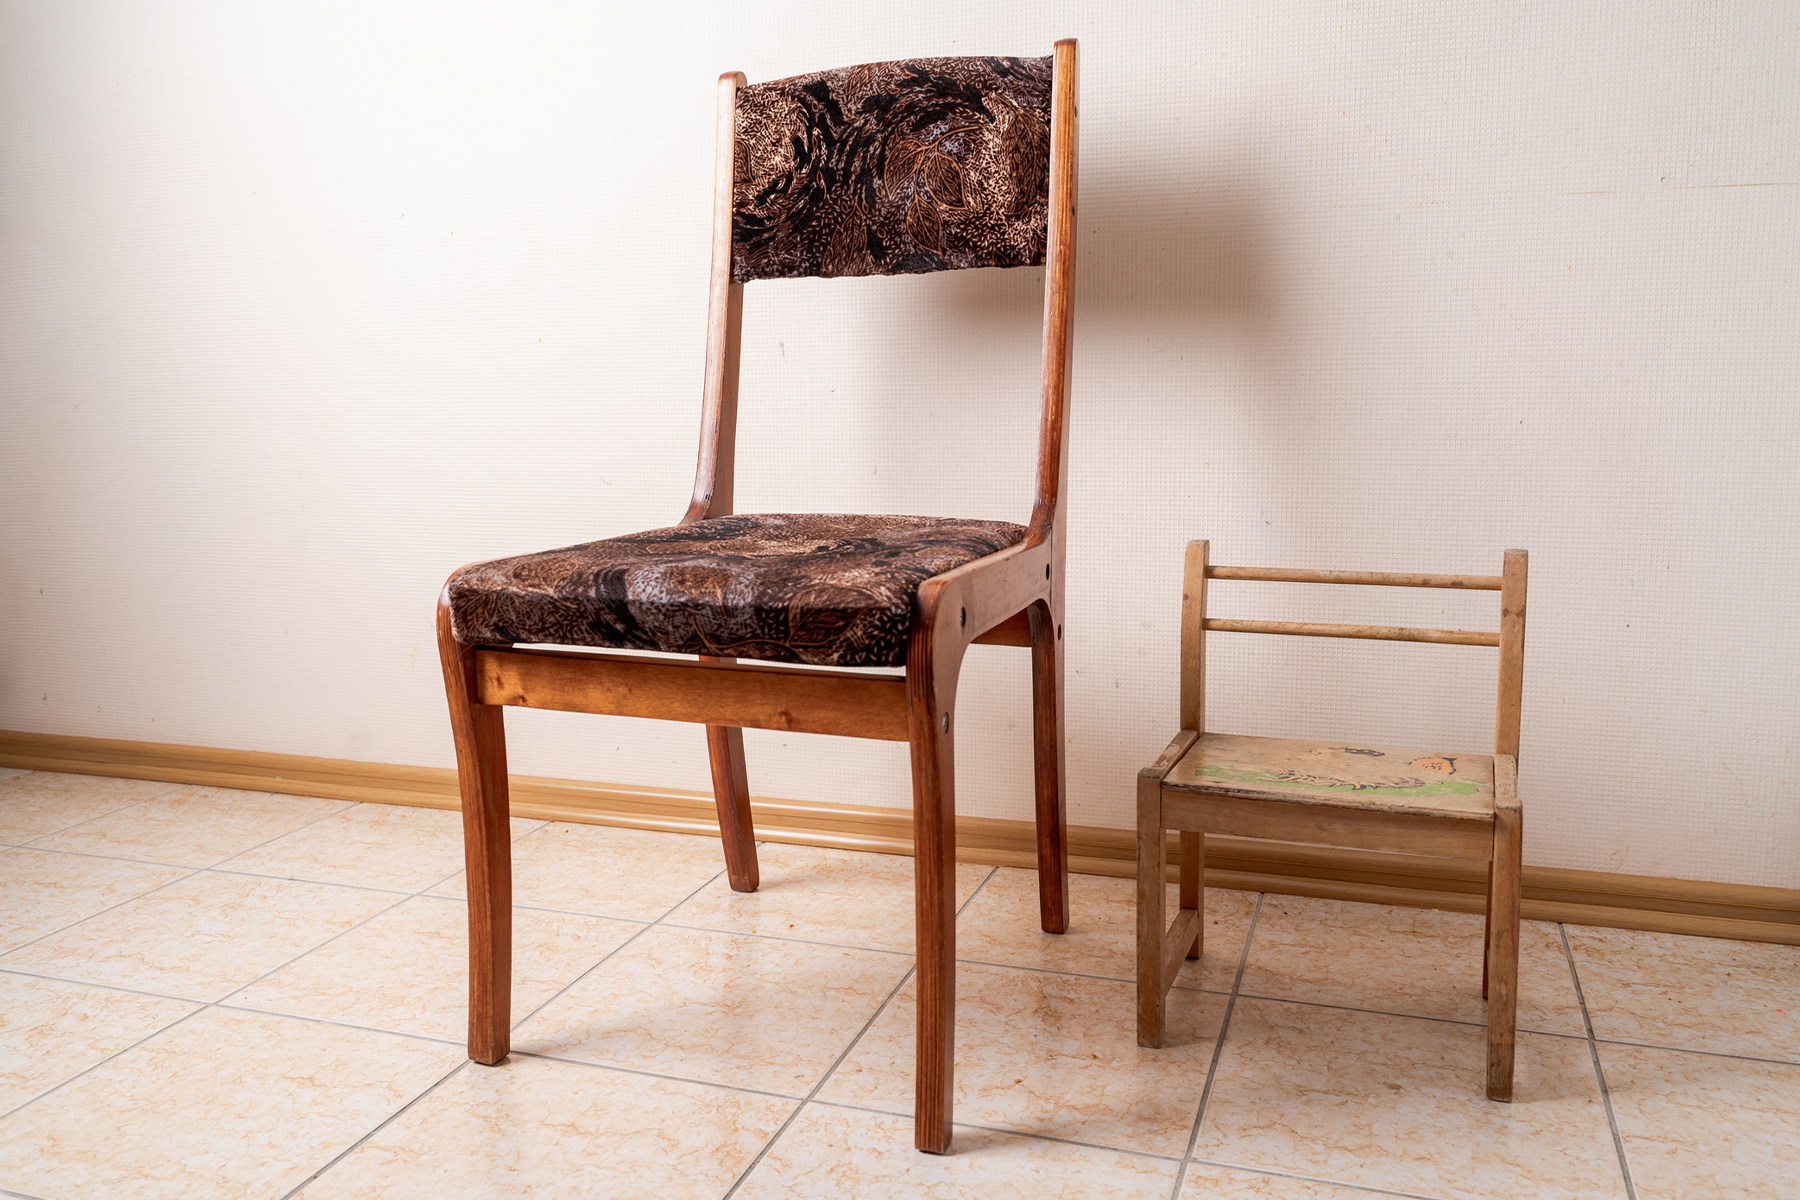 Ein Kinderstuhl und ein großer Stuhl, beide aus Holz, stehen auf einem Fliesenboden. Hintergrund weiße Wand.